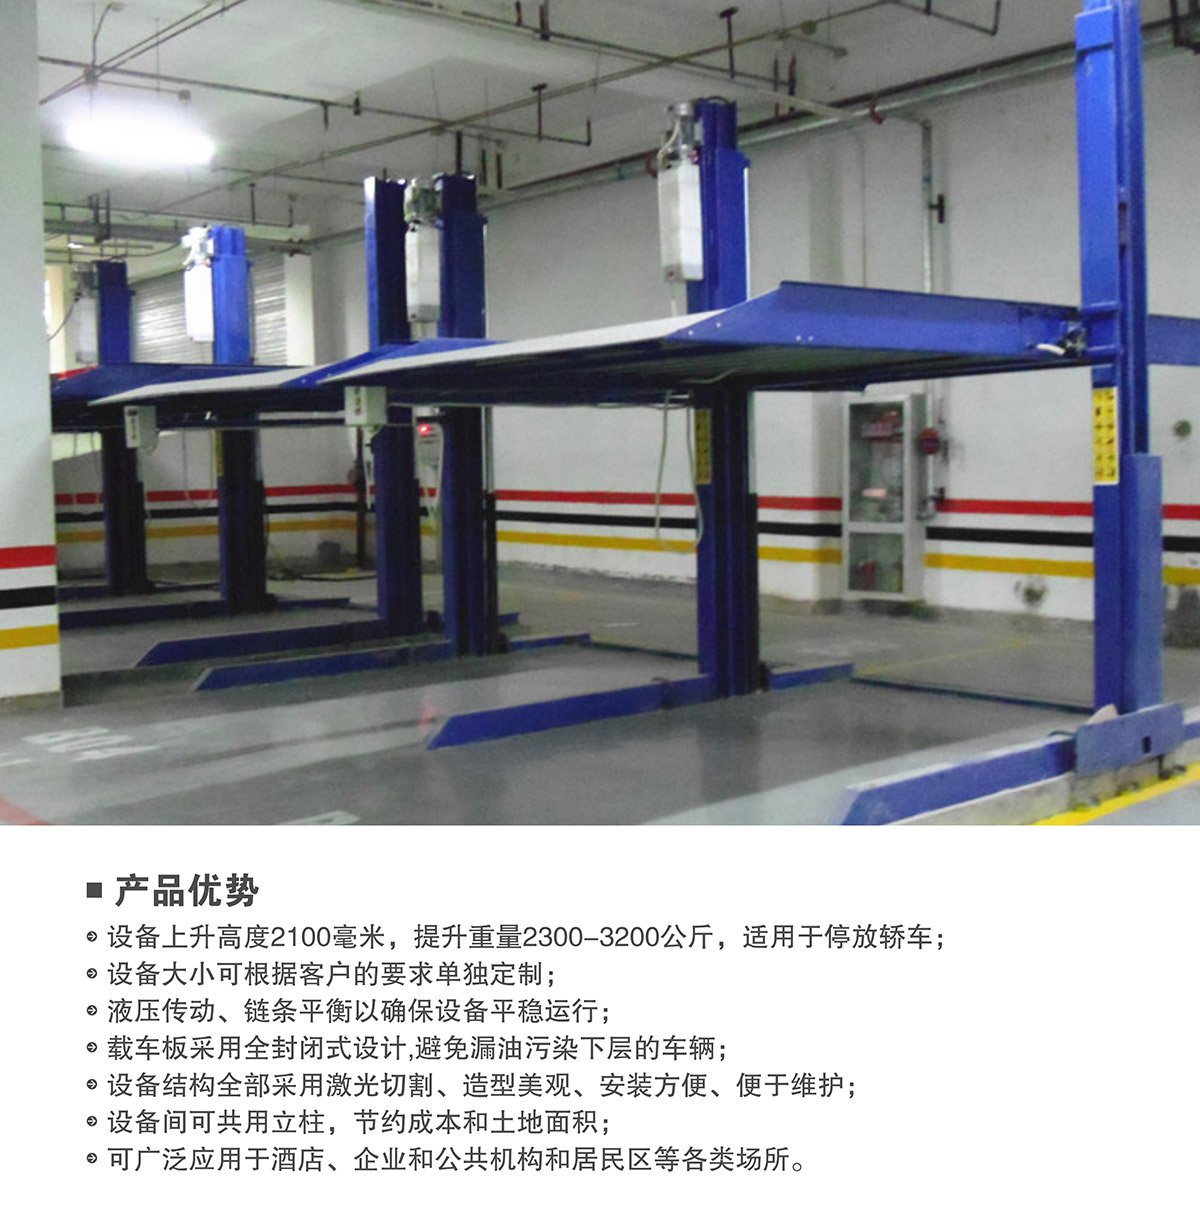 机械车位租赁两柱简易升降机械停车设备产品优势.jpg